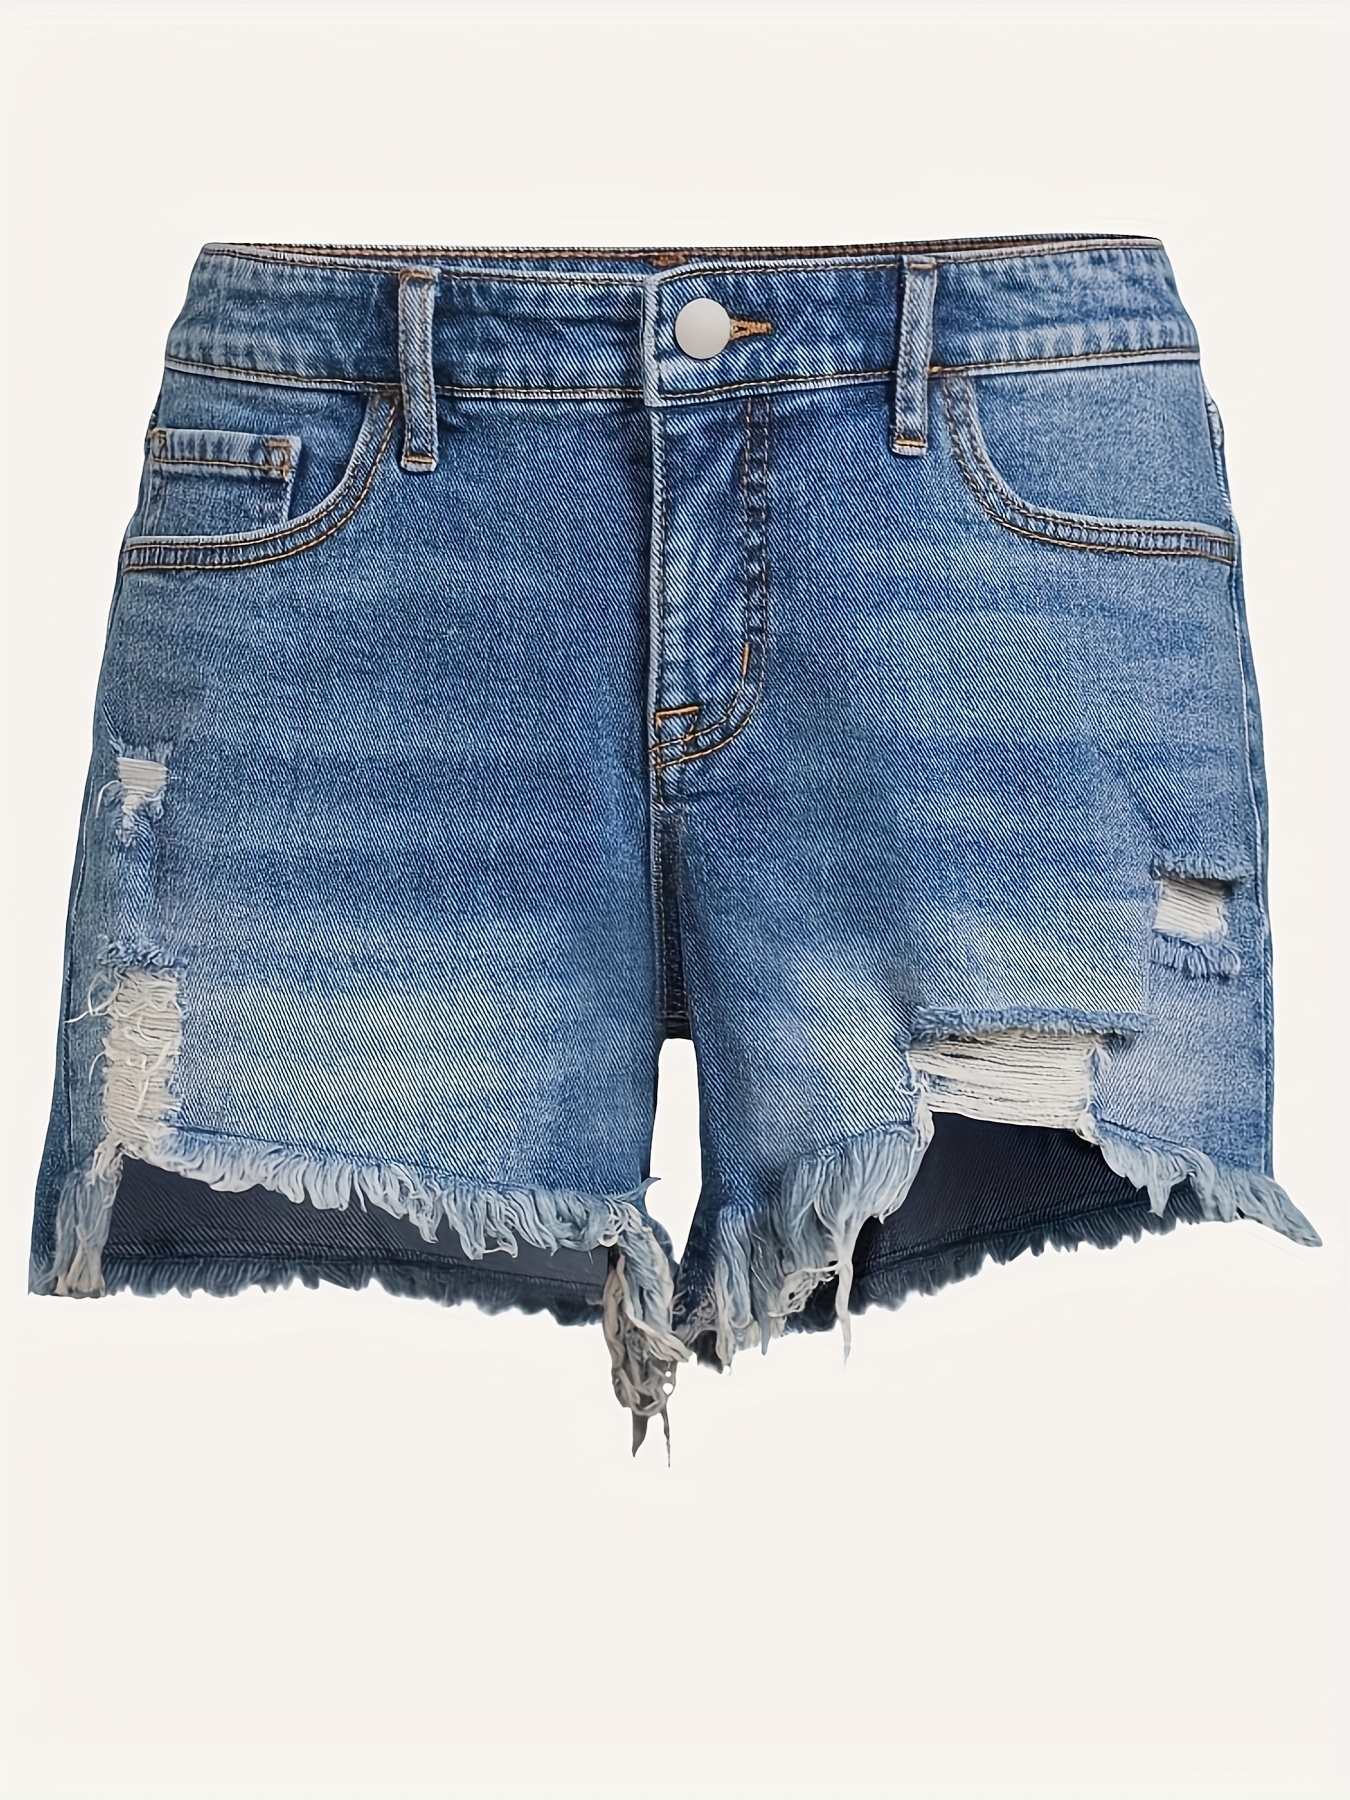 Shorts jeans desgastados com bainha crua rasgada calça curta - Temu Portugal